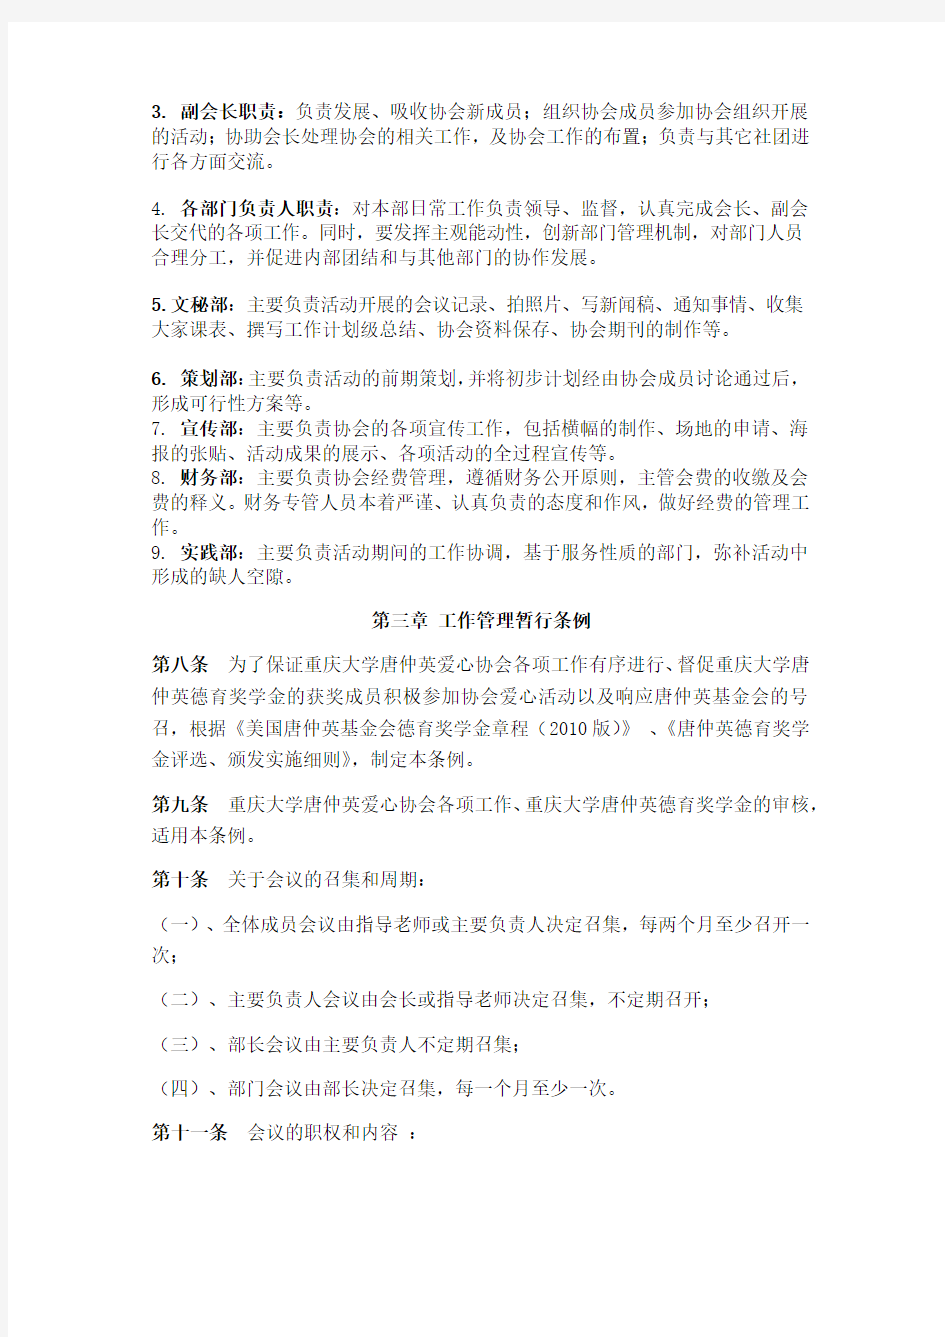 重庆大学唐仲英爱心协会会员手册草稿